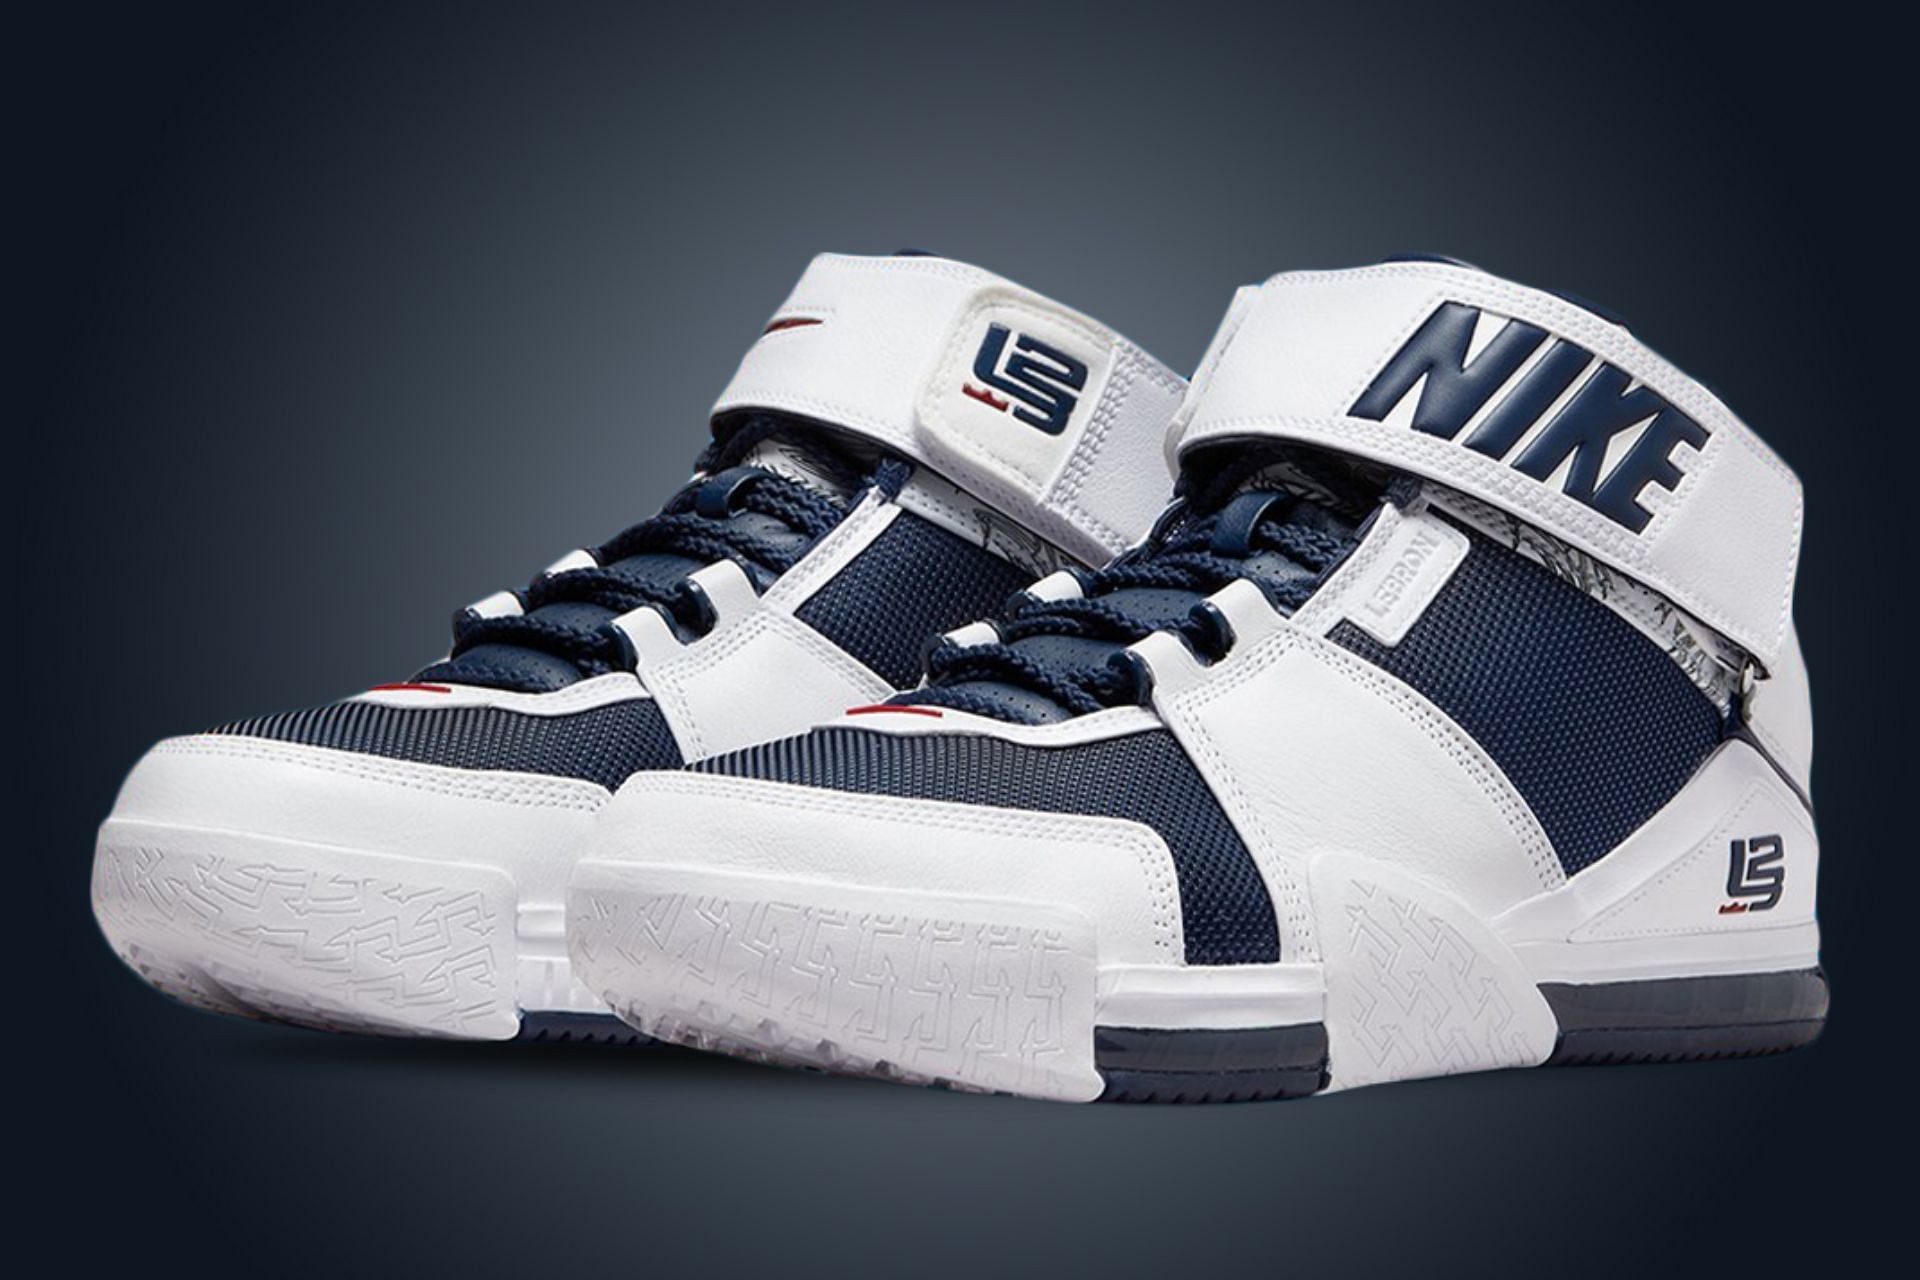 Nike LeBron 2 USA edition (Image via Nike)